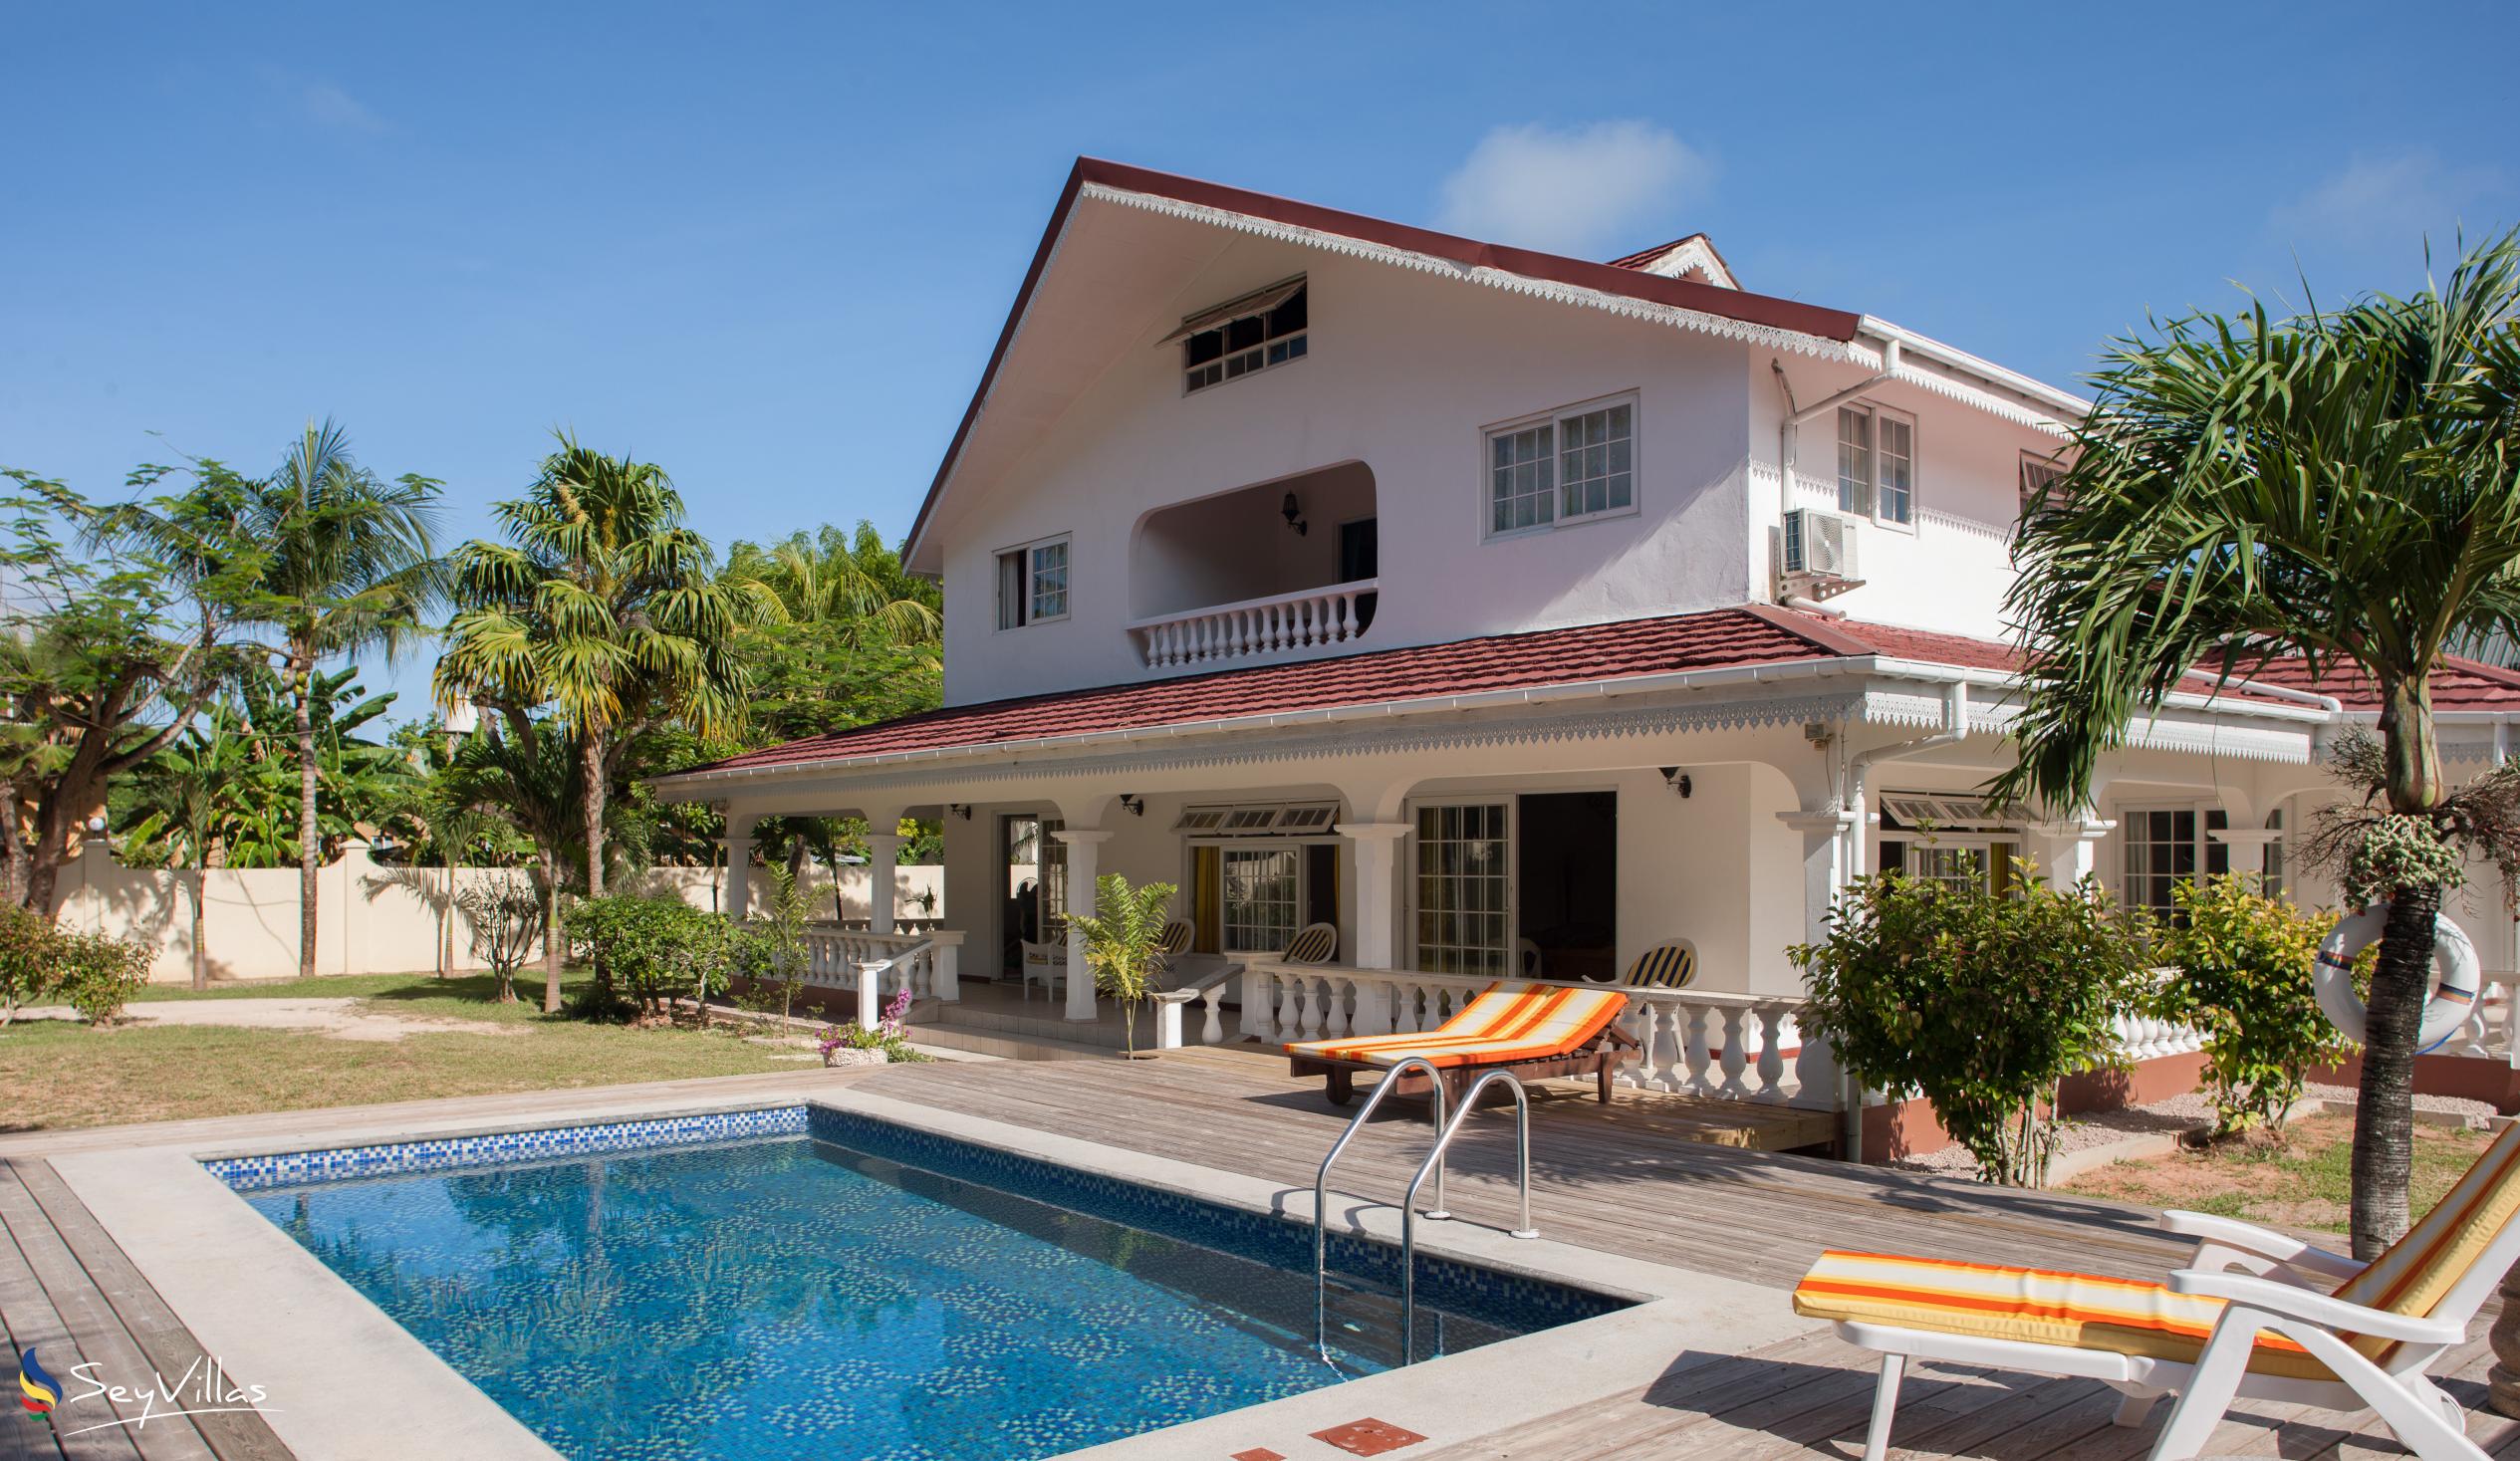 Foto 1: Villa Confort - Aussenbereich - Praslin (Seychellen)